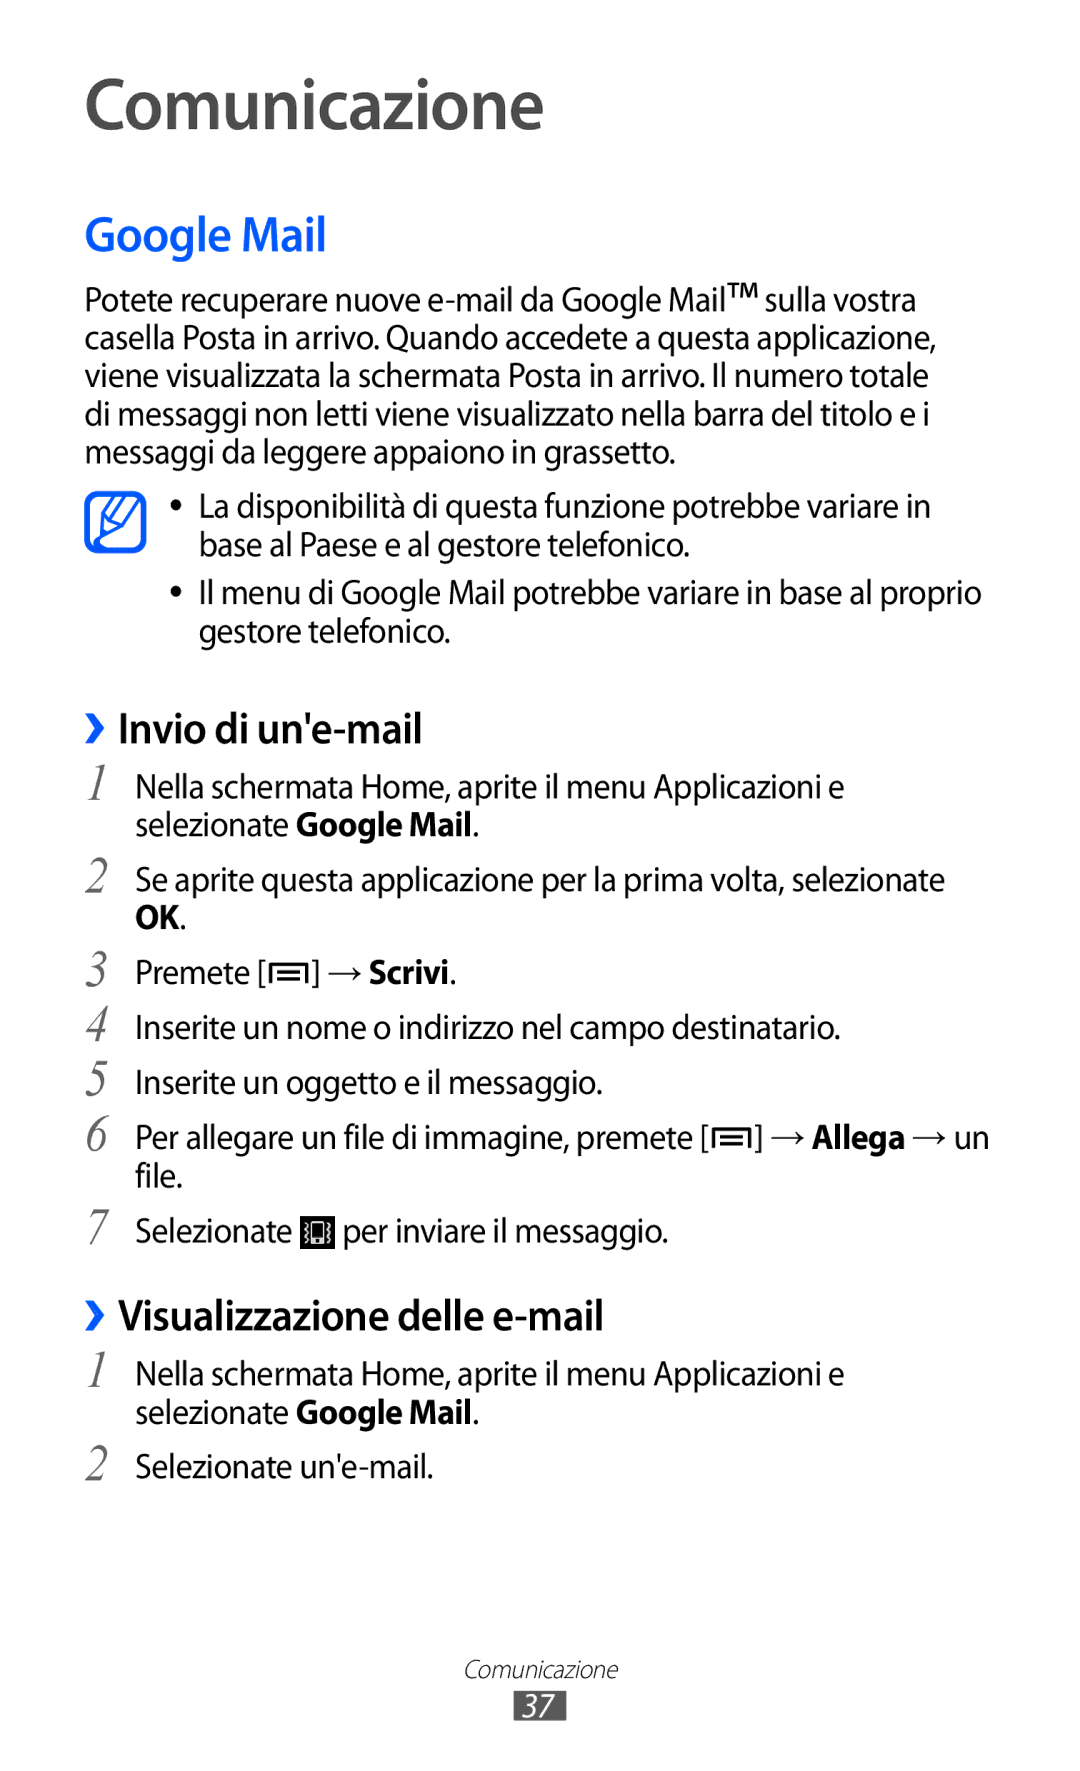 Samsung YP-GI1CW/XEG, YP-G1CW/XEG manual Comunicazione, Google Mail, ››Invio di une-mail, ››Visualizzazione delle e-mail 